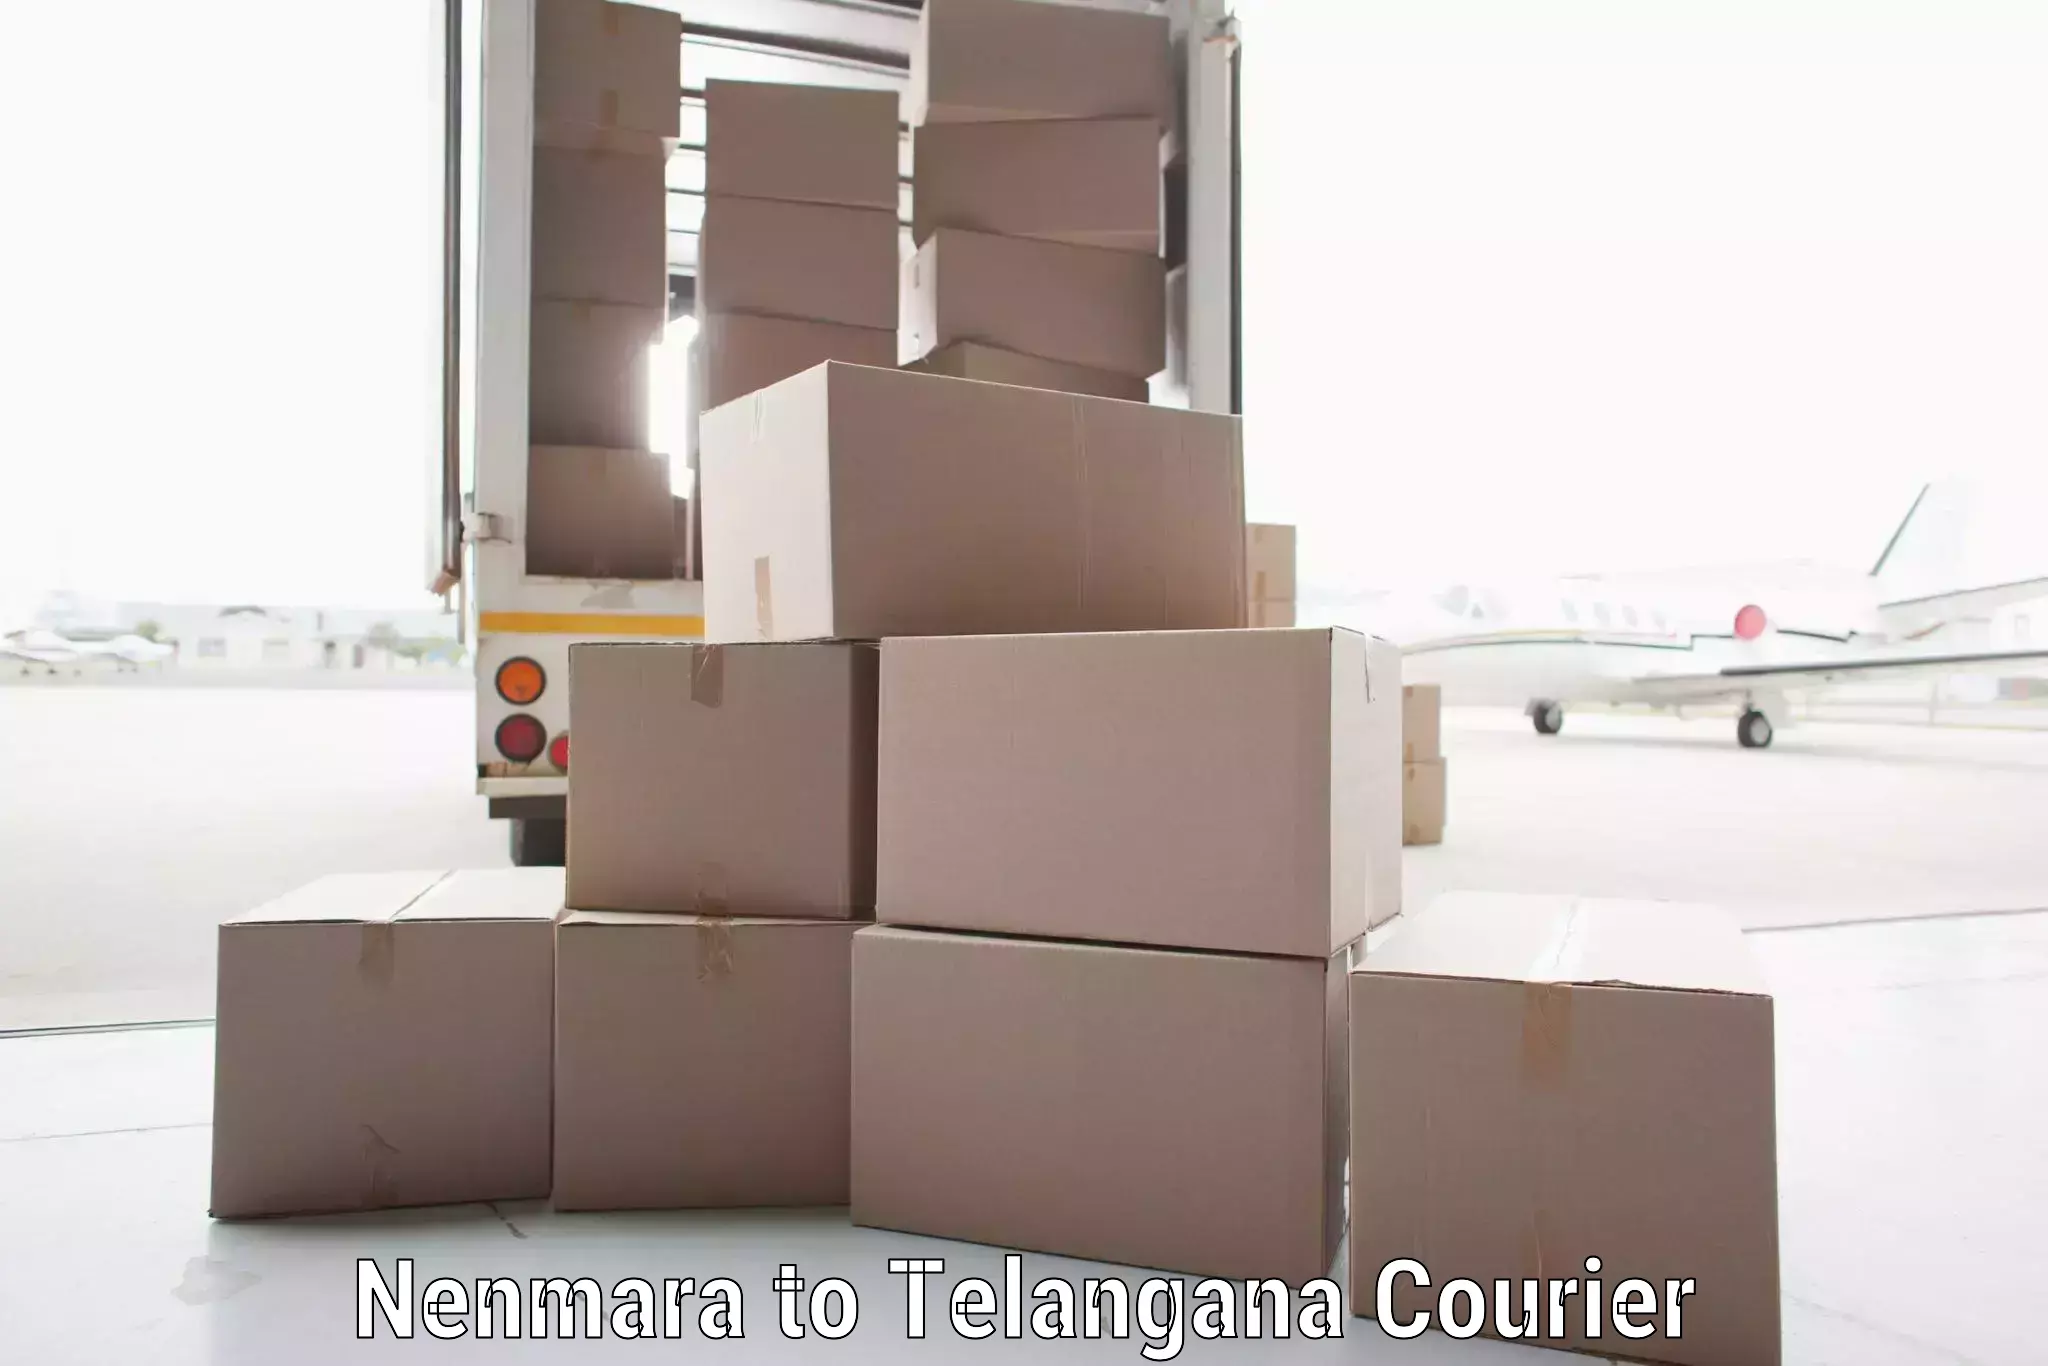 On-time shipping guarantee Nenmara to Yellareddy